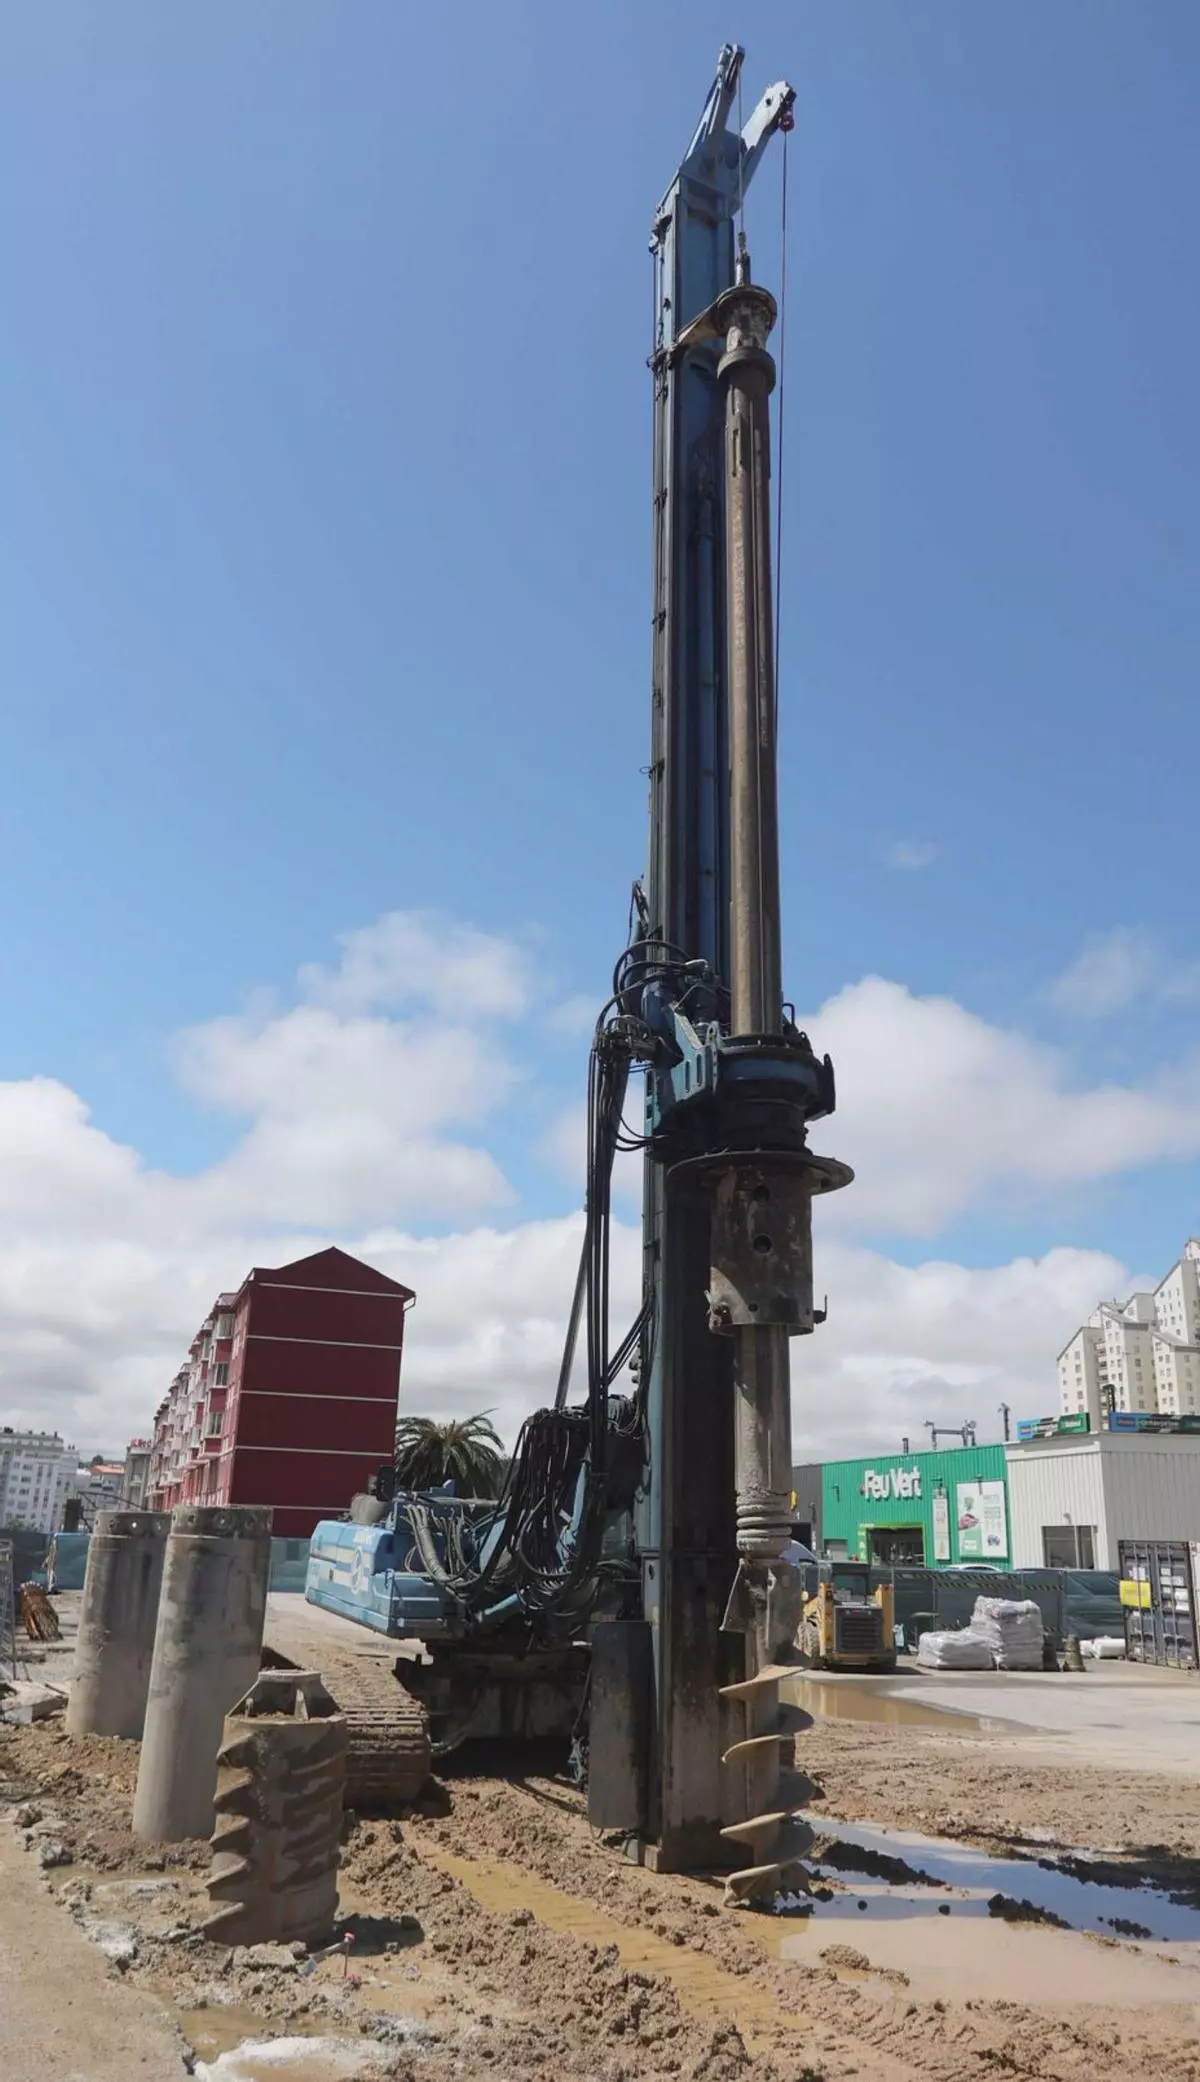 Una ‘superperforadora’ de 22 metros en la intermodal de A Coruña